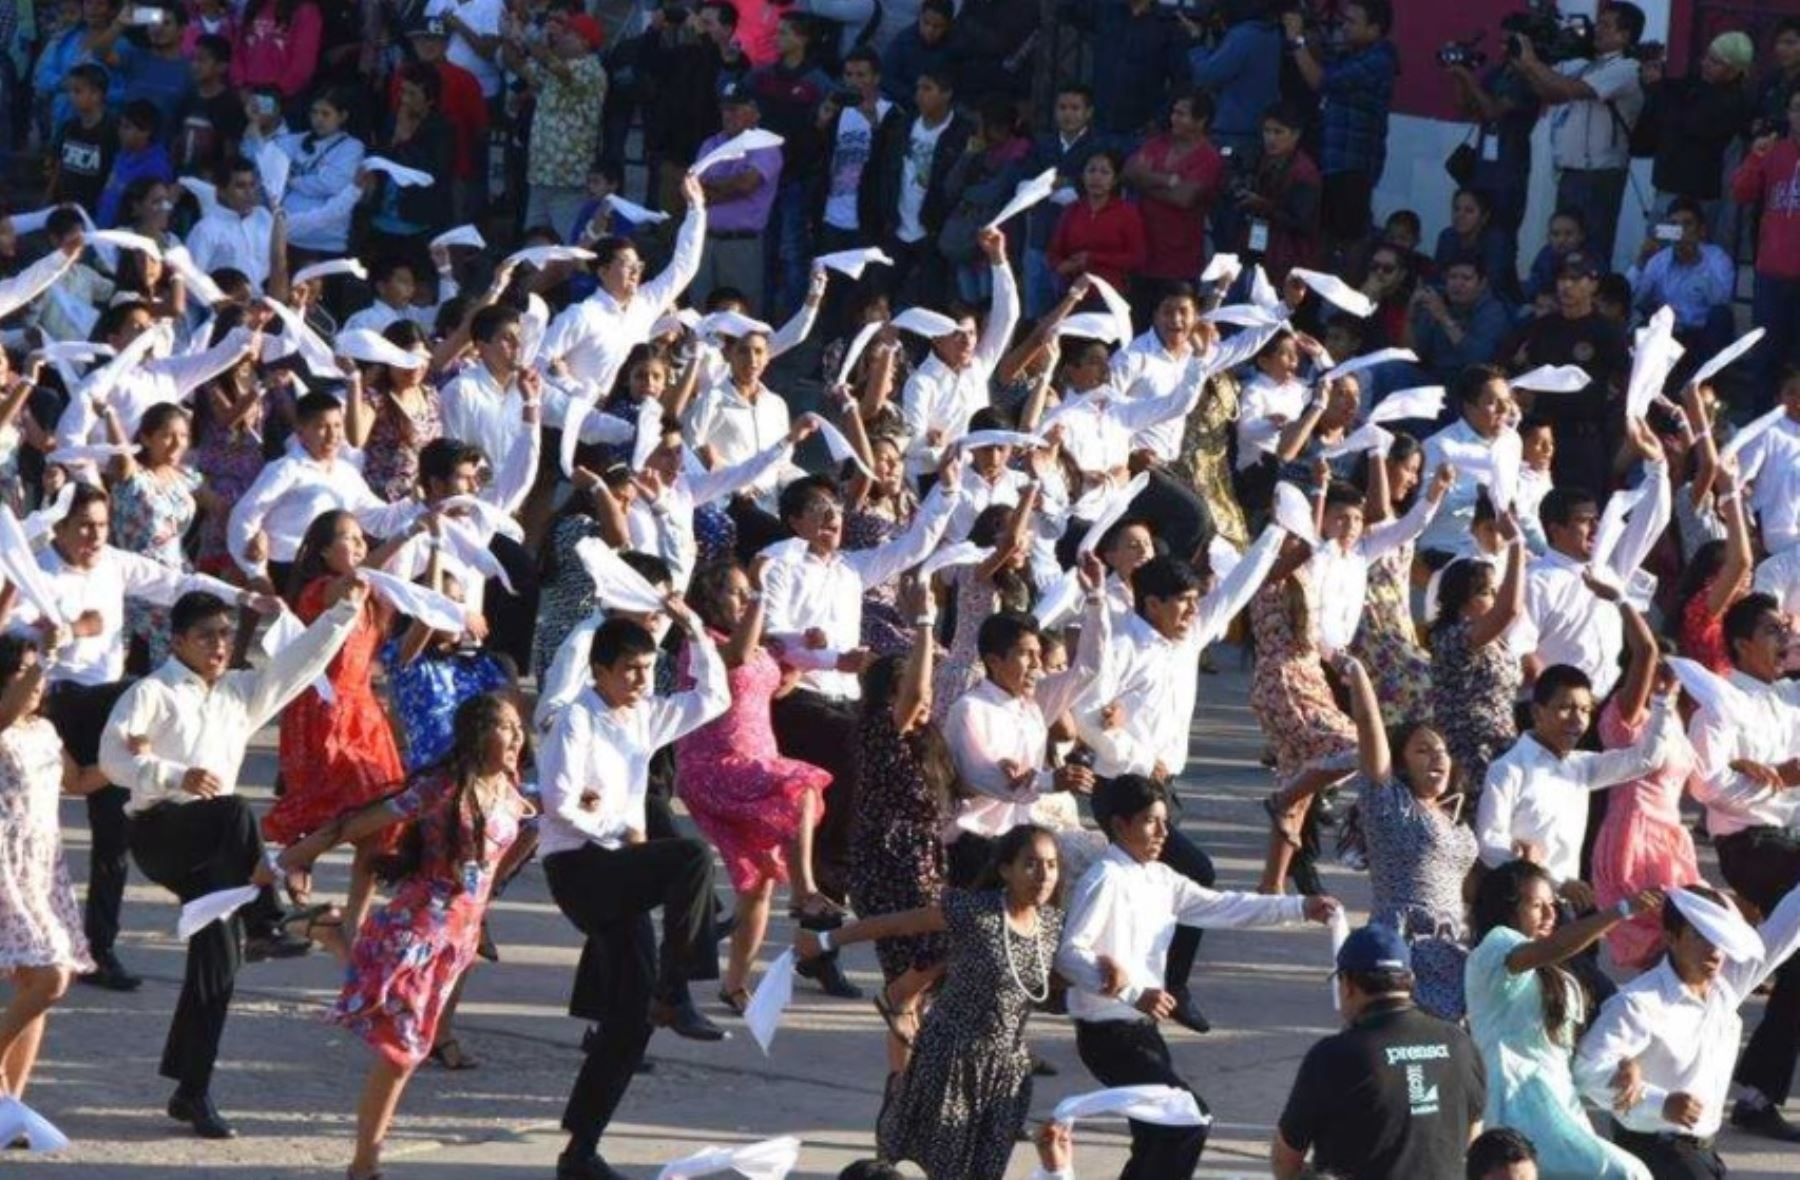 Desde hoy la Pandilla de Moyobamba ingresó al Libro de los Récord Guinness como el baile folclórico peruano más grande del mundo, al reunir a 1,585 parejas de danzantes en la interpretación de esta tradicional expresión del arte popular amazónico.